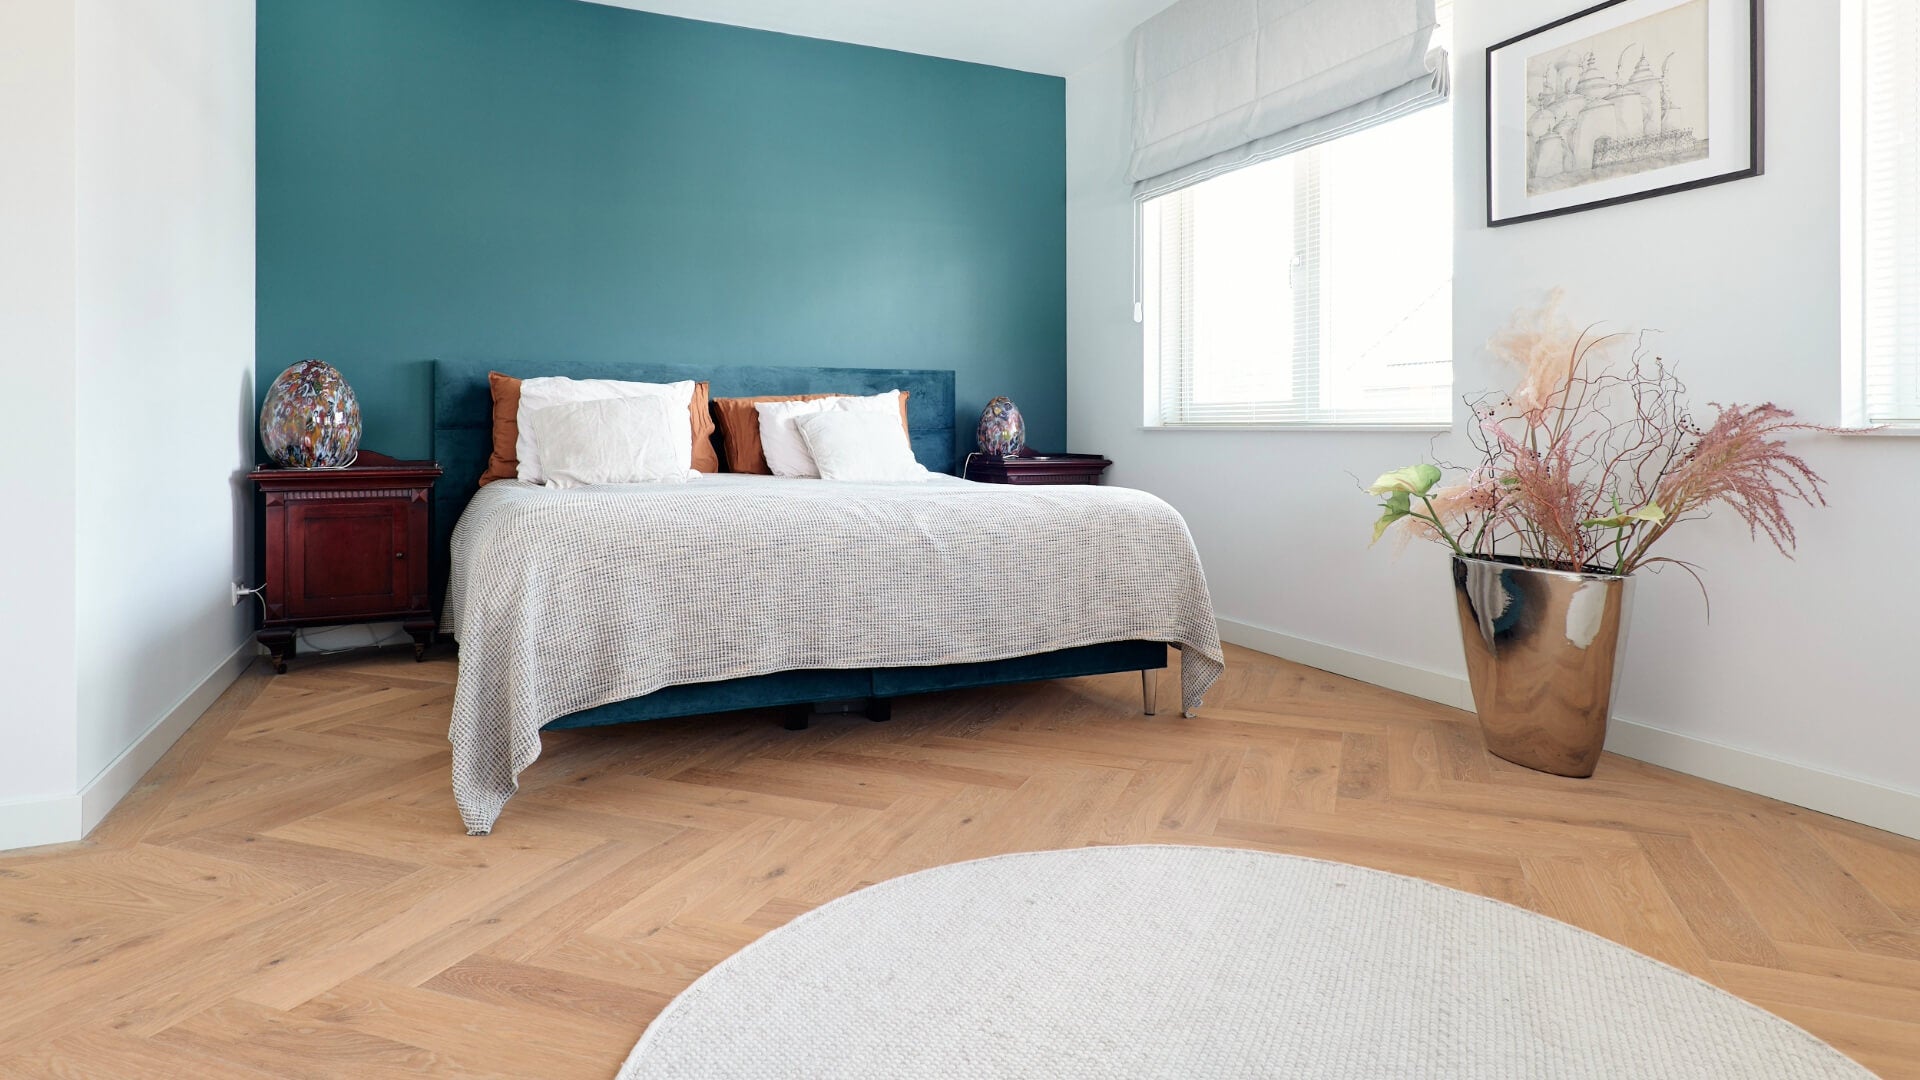 Visgraat vloer in de slaapkamer, gelegd in Amsterdam. De vloer zorgt voor een luxe uitstraling in de ruimte